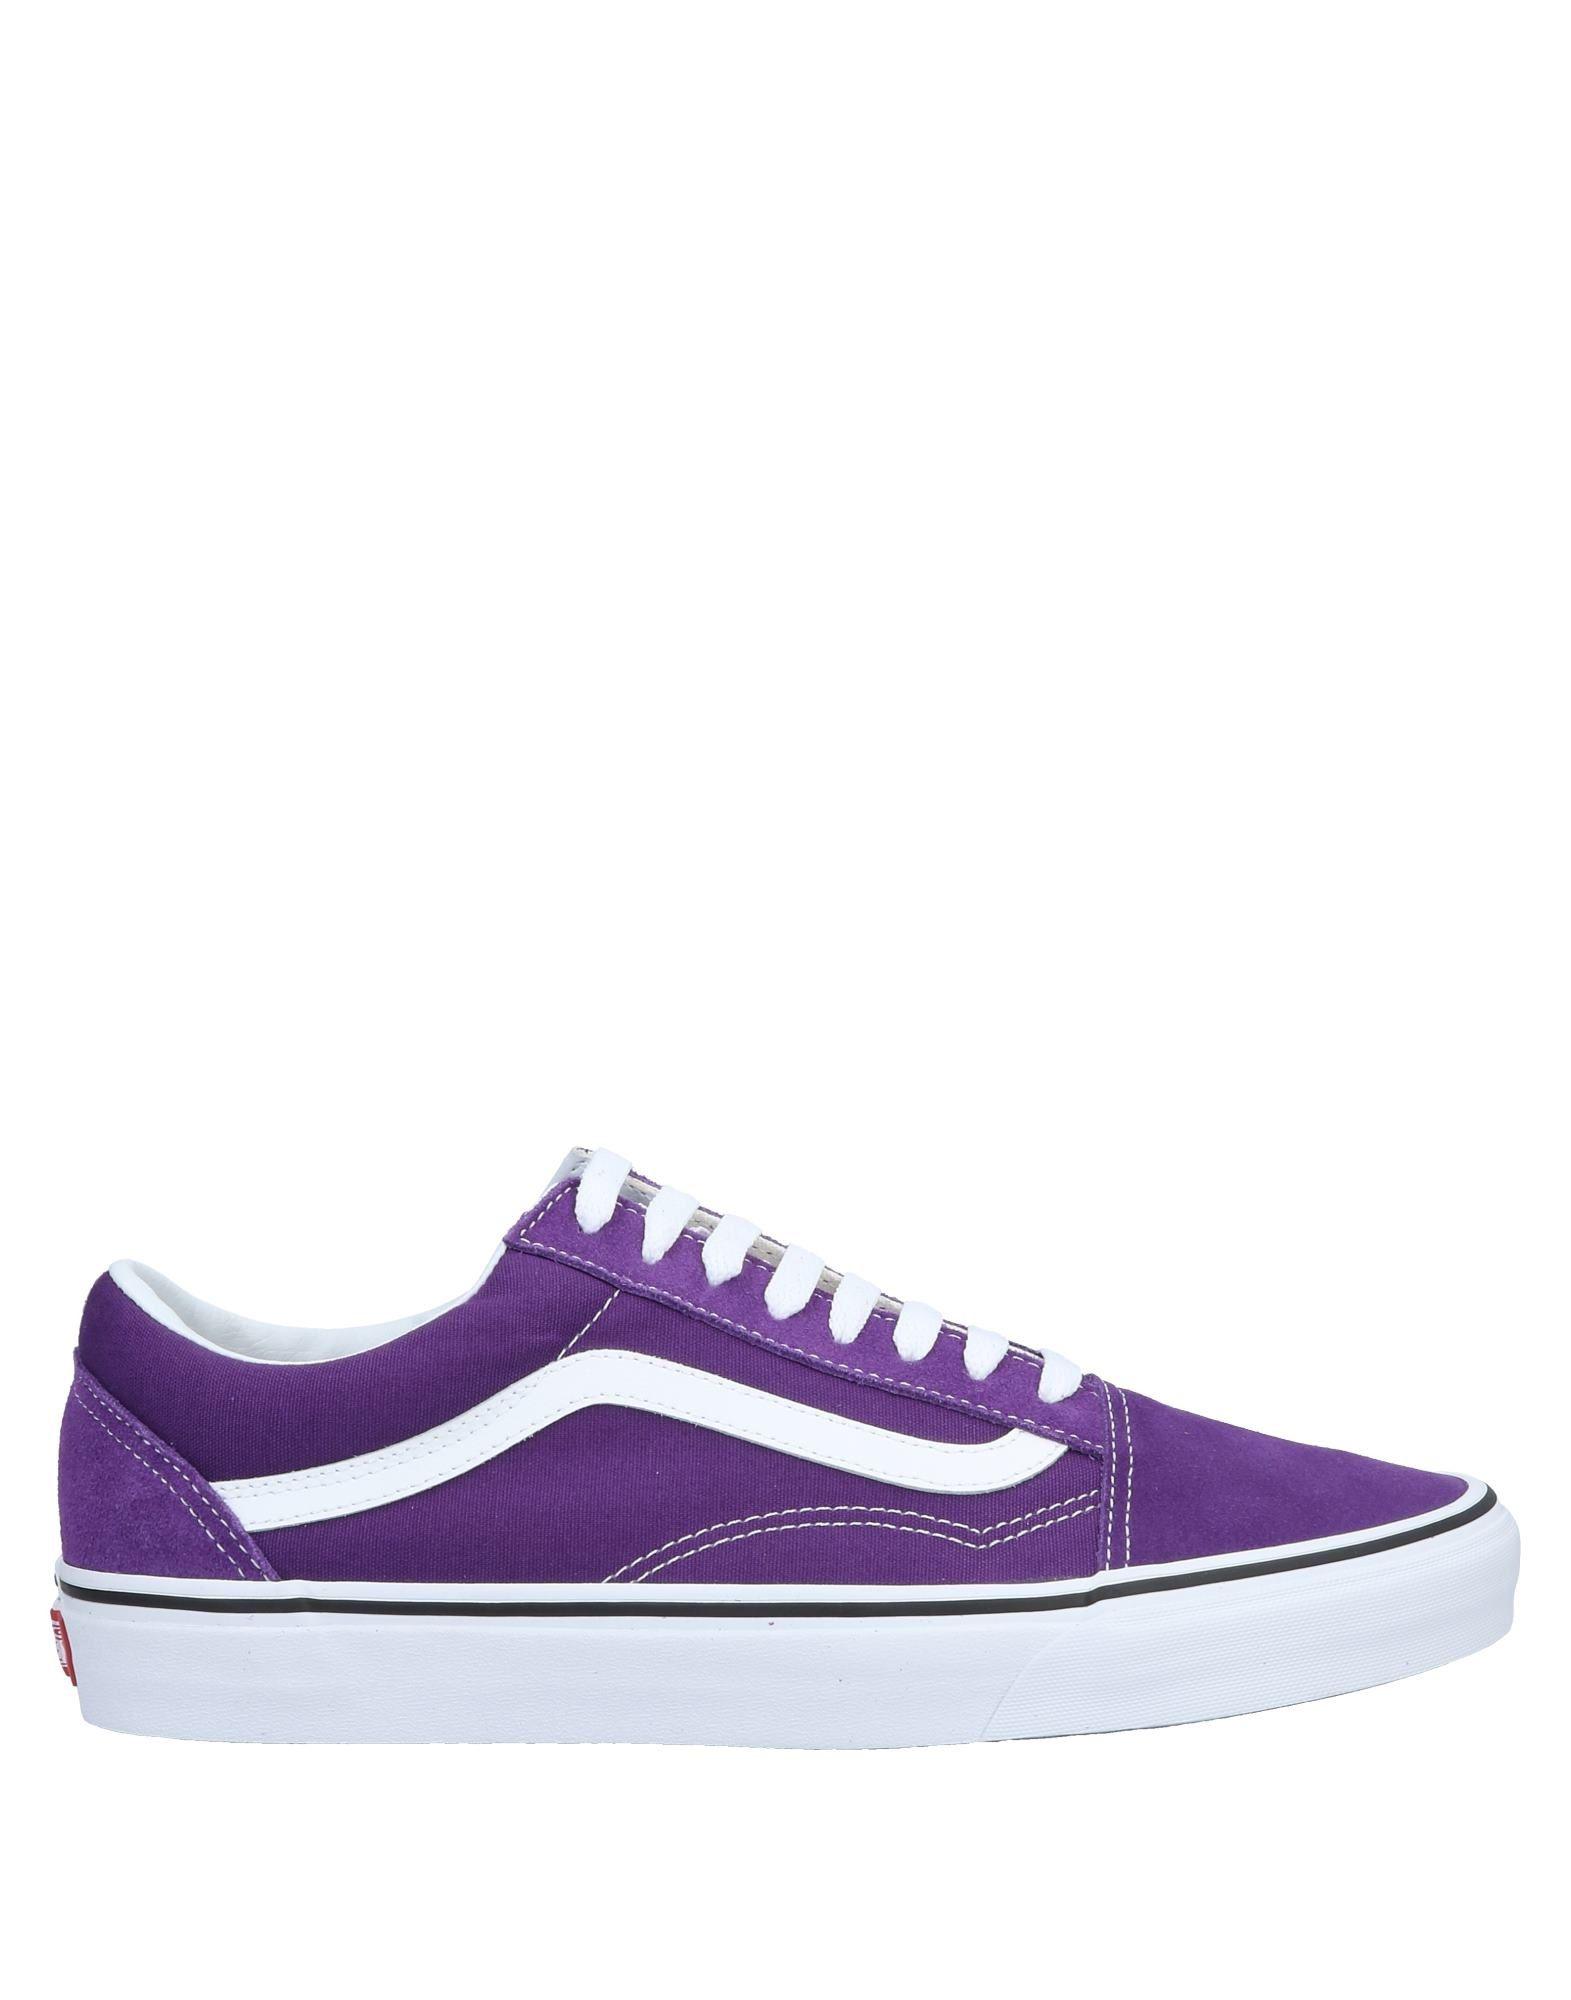 purple vans sneakers